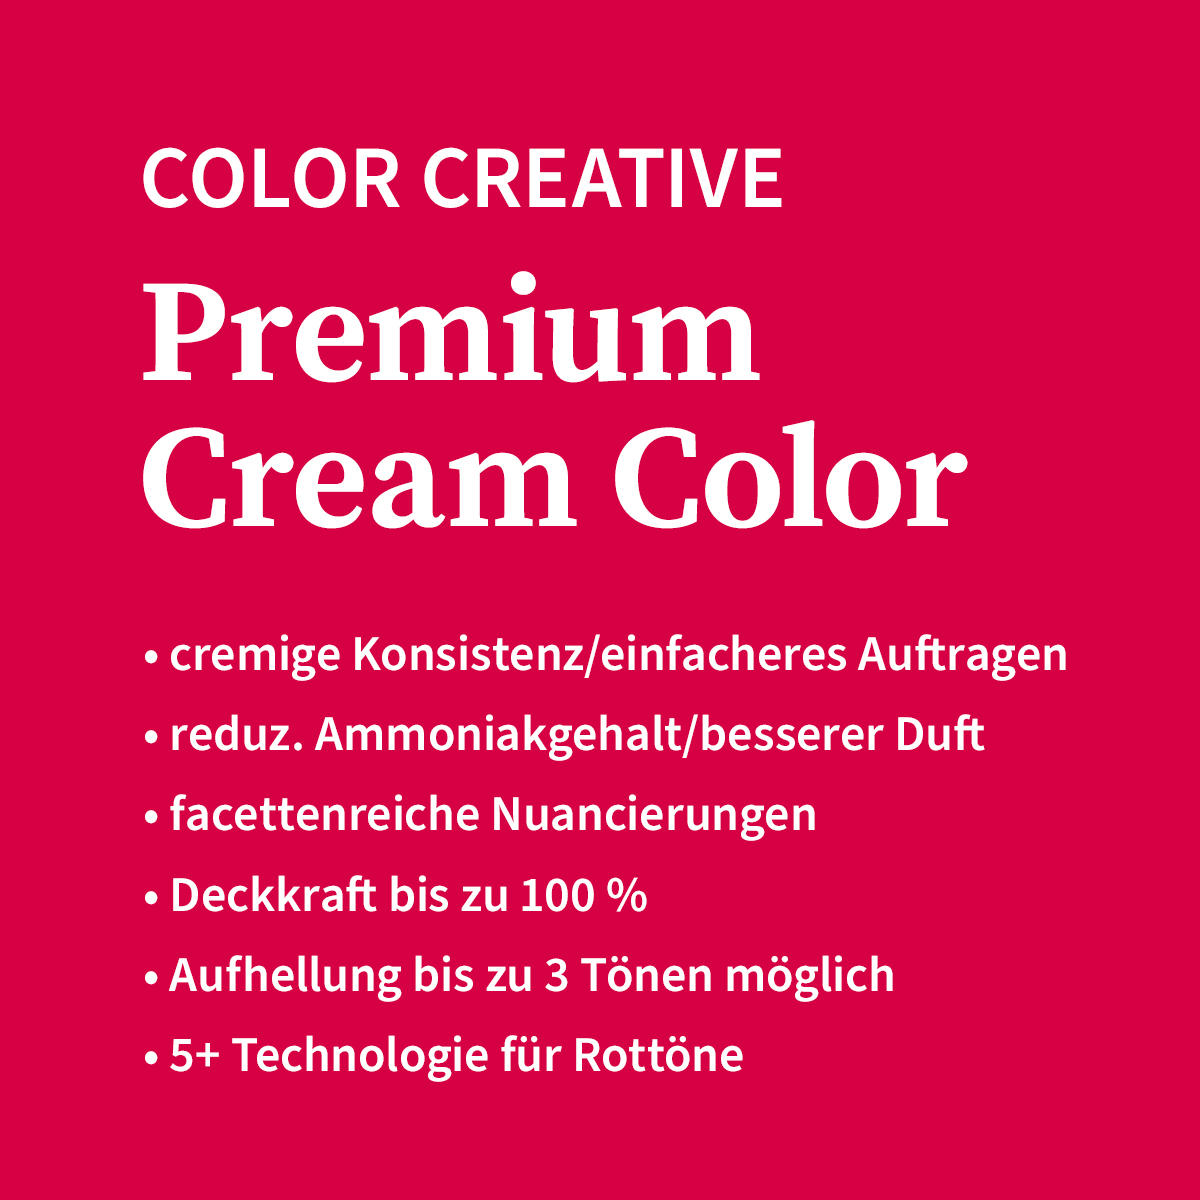 Basler Color Creative Premium Cream Color 10/8 biondo chiaro perlato, tubo 60 ml - 4